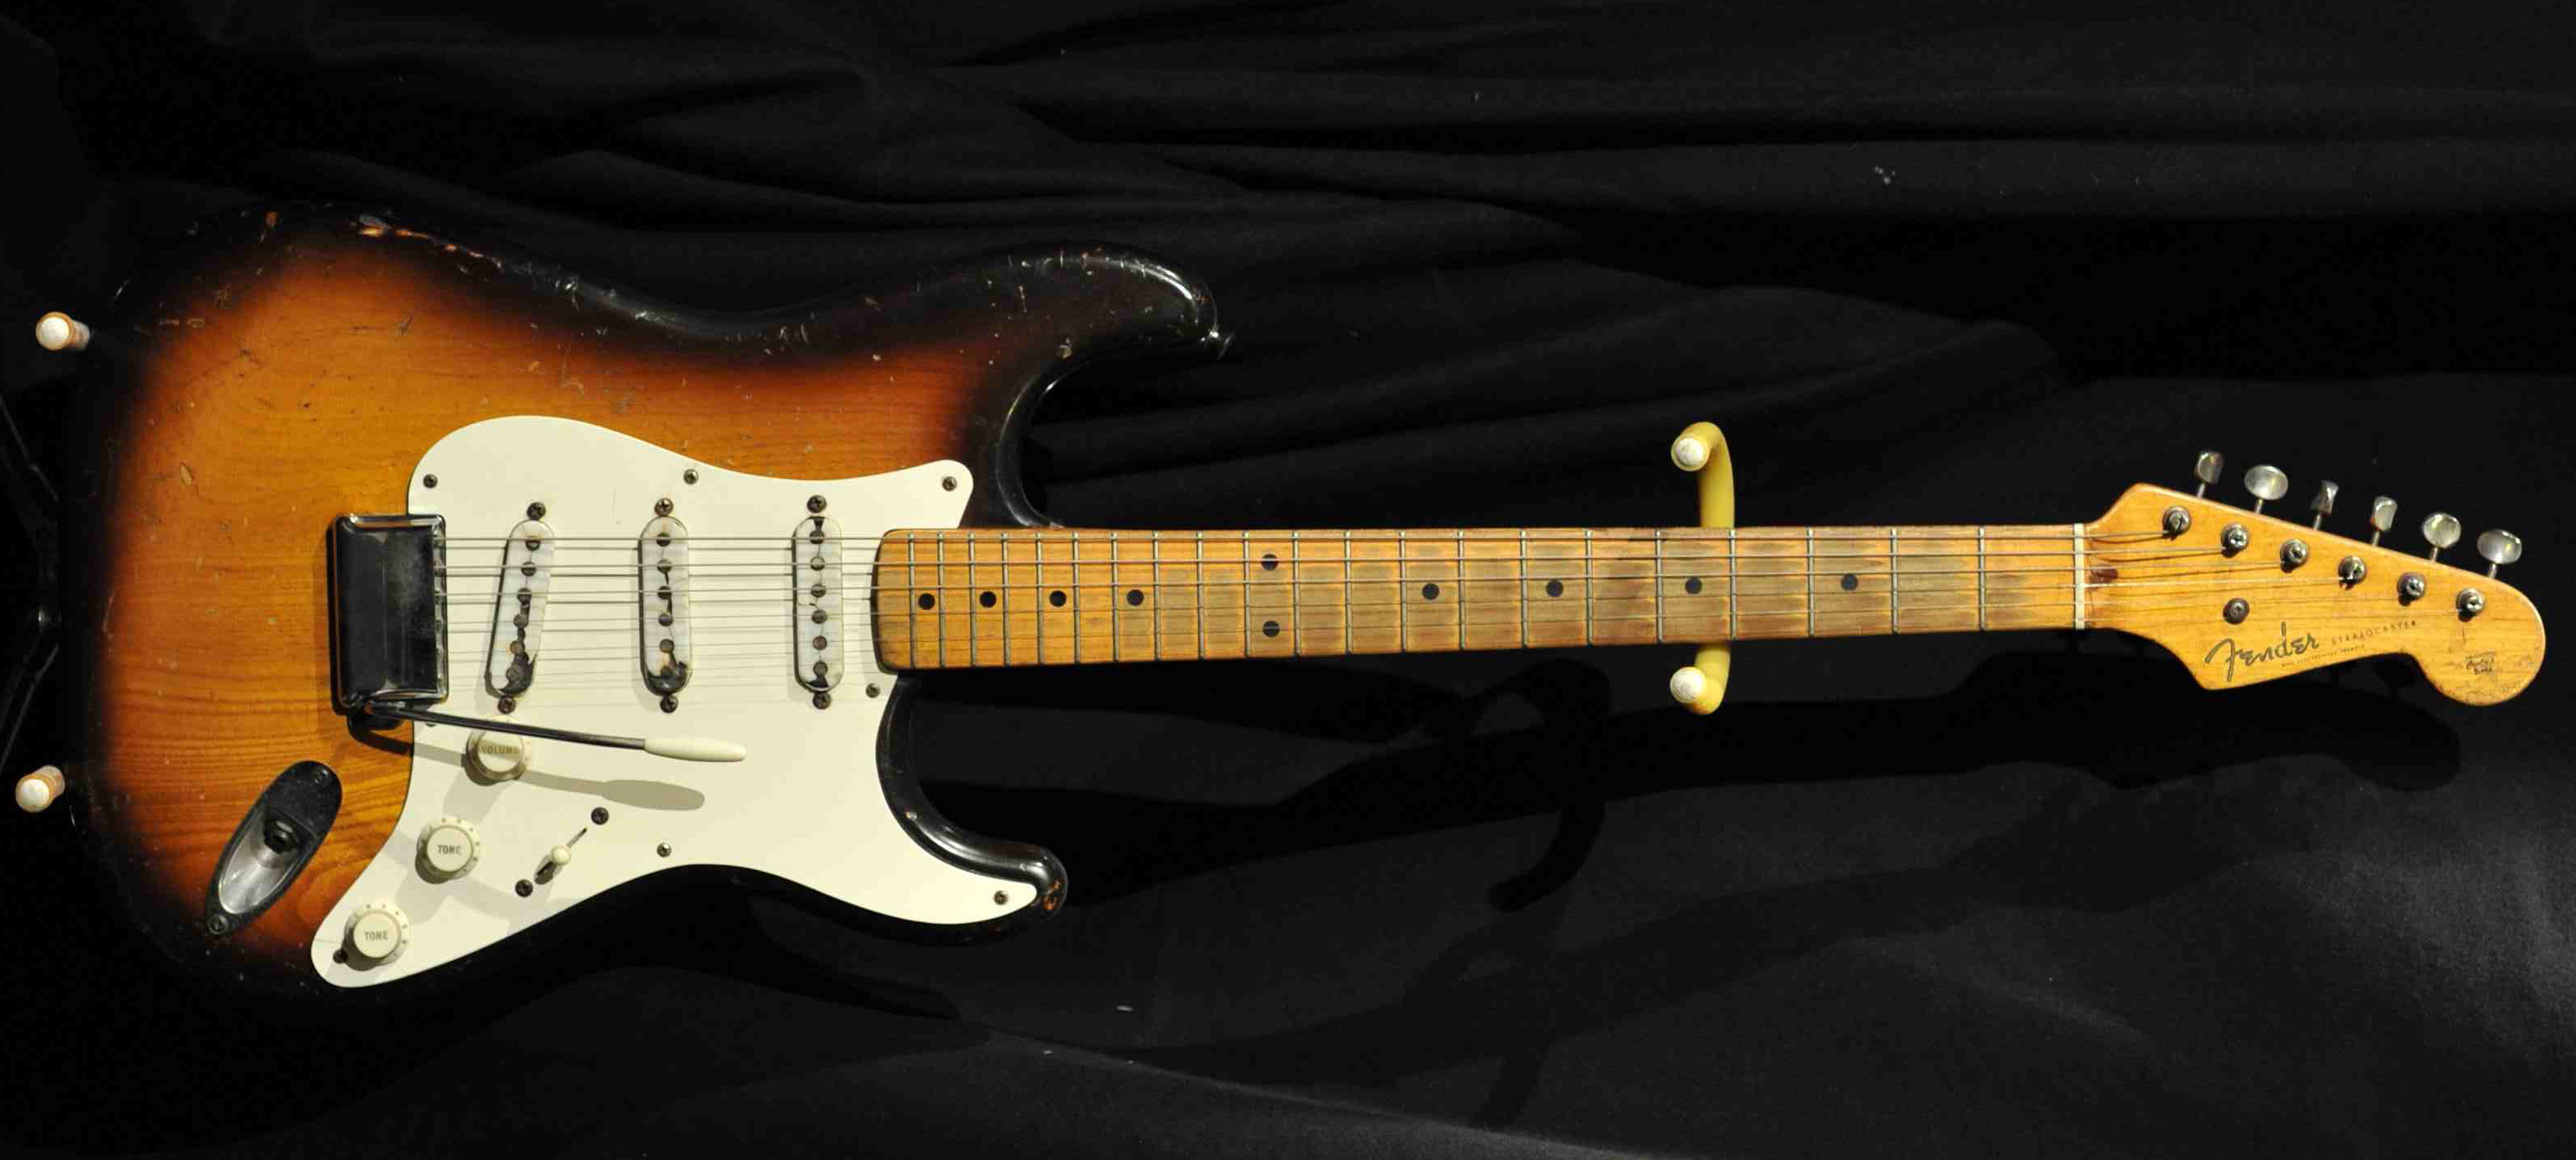 Fender_Stratocaster_1954.jpg